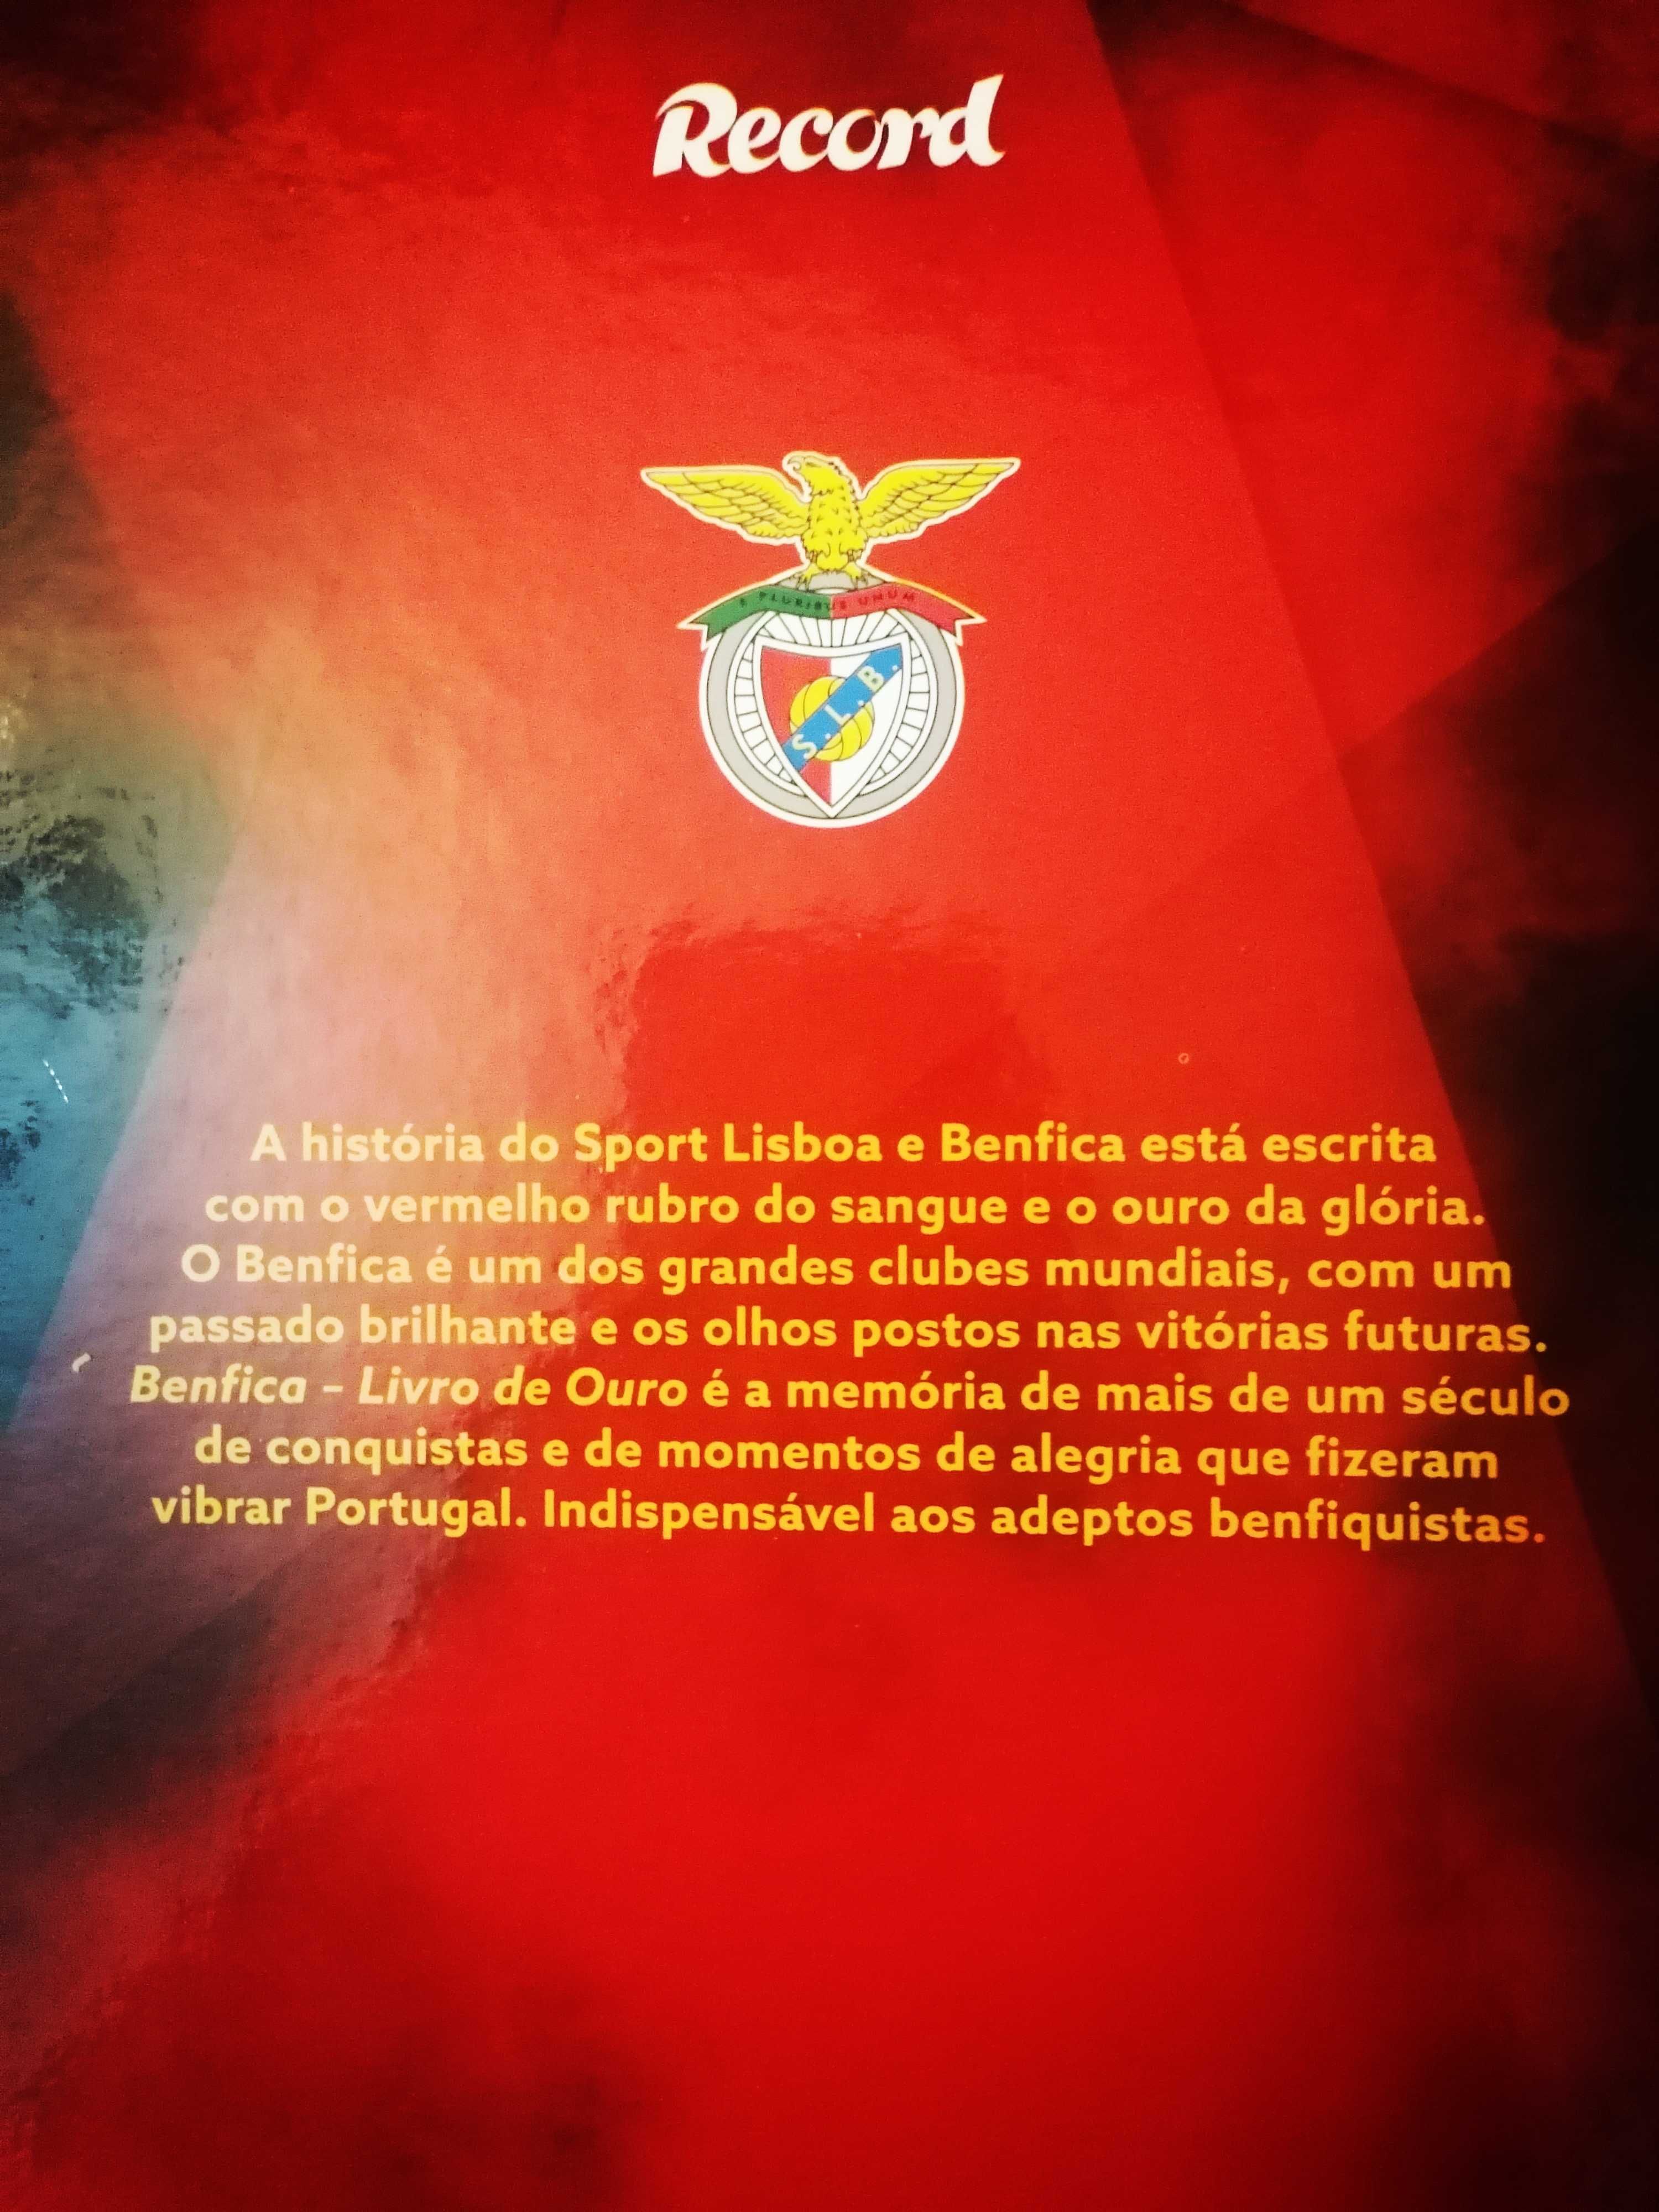 Benfica - Livro de Ouro 
"Tudo o que o verdadeiro adepto deve saber"